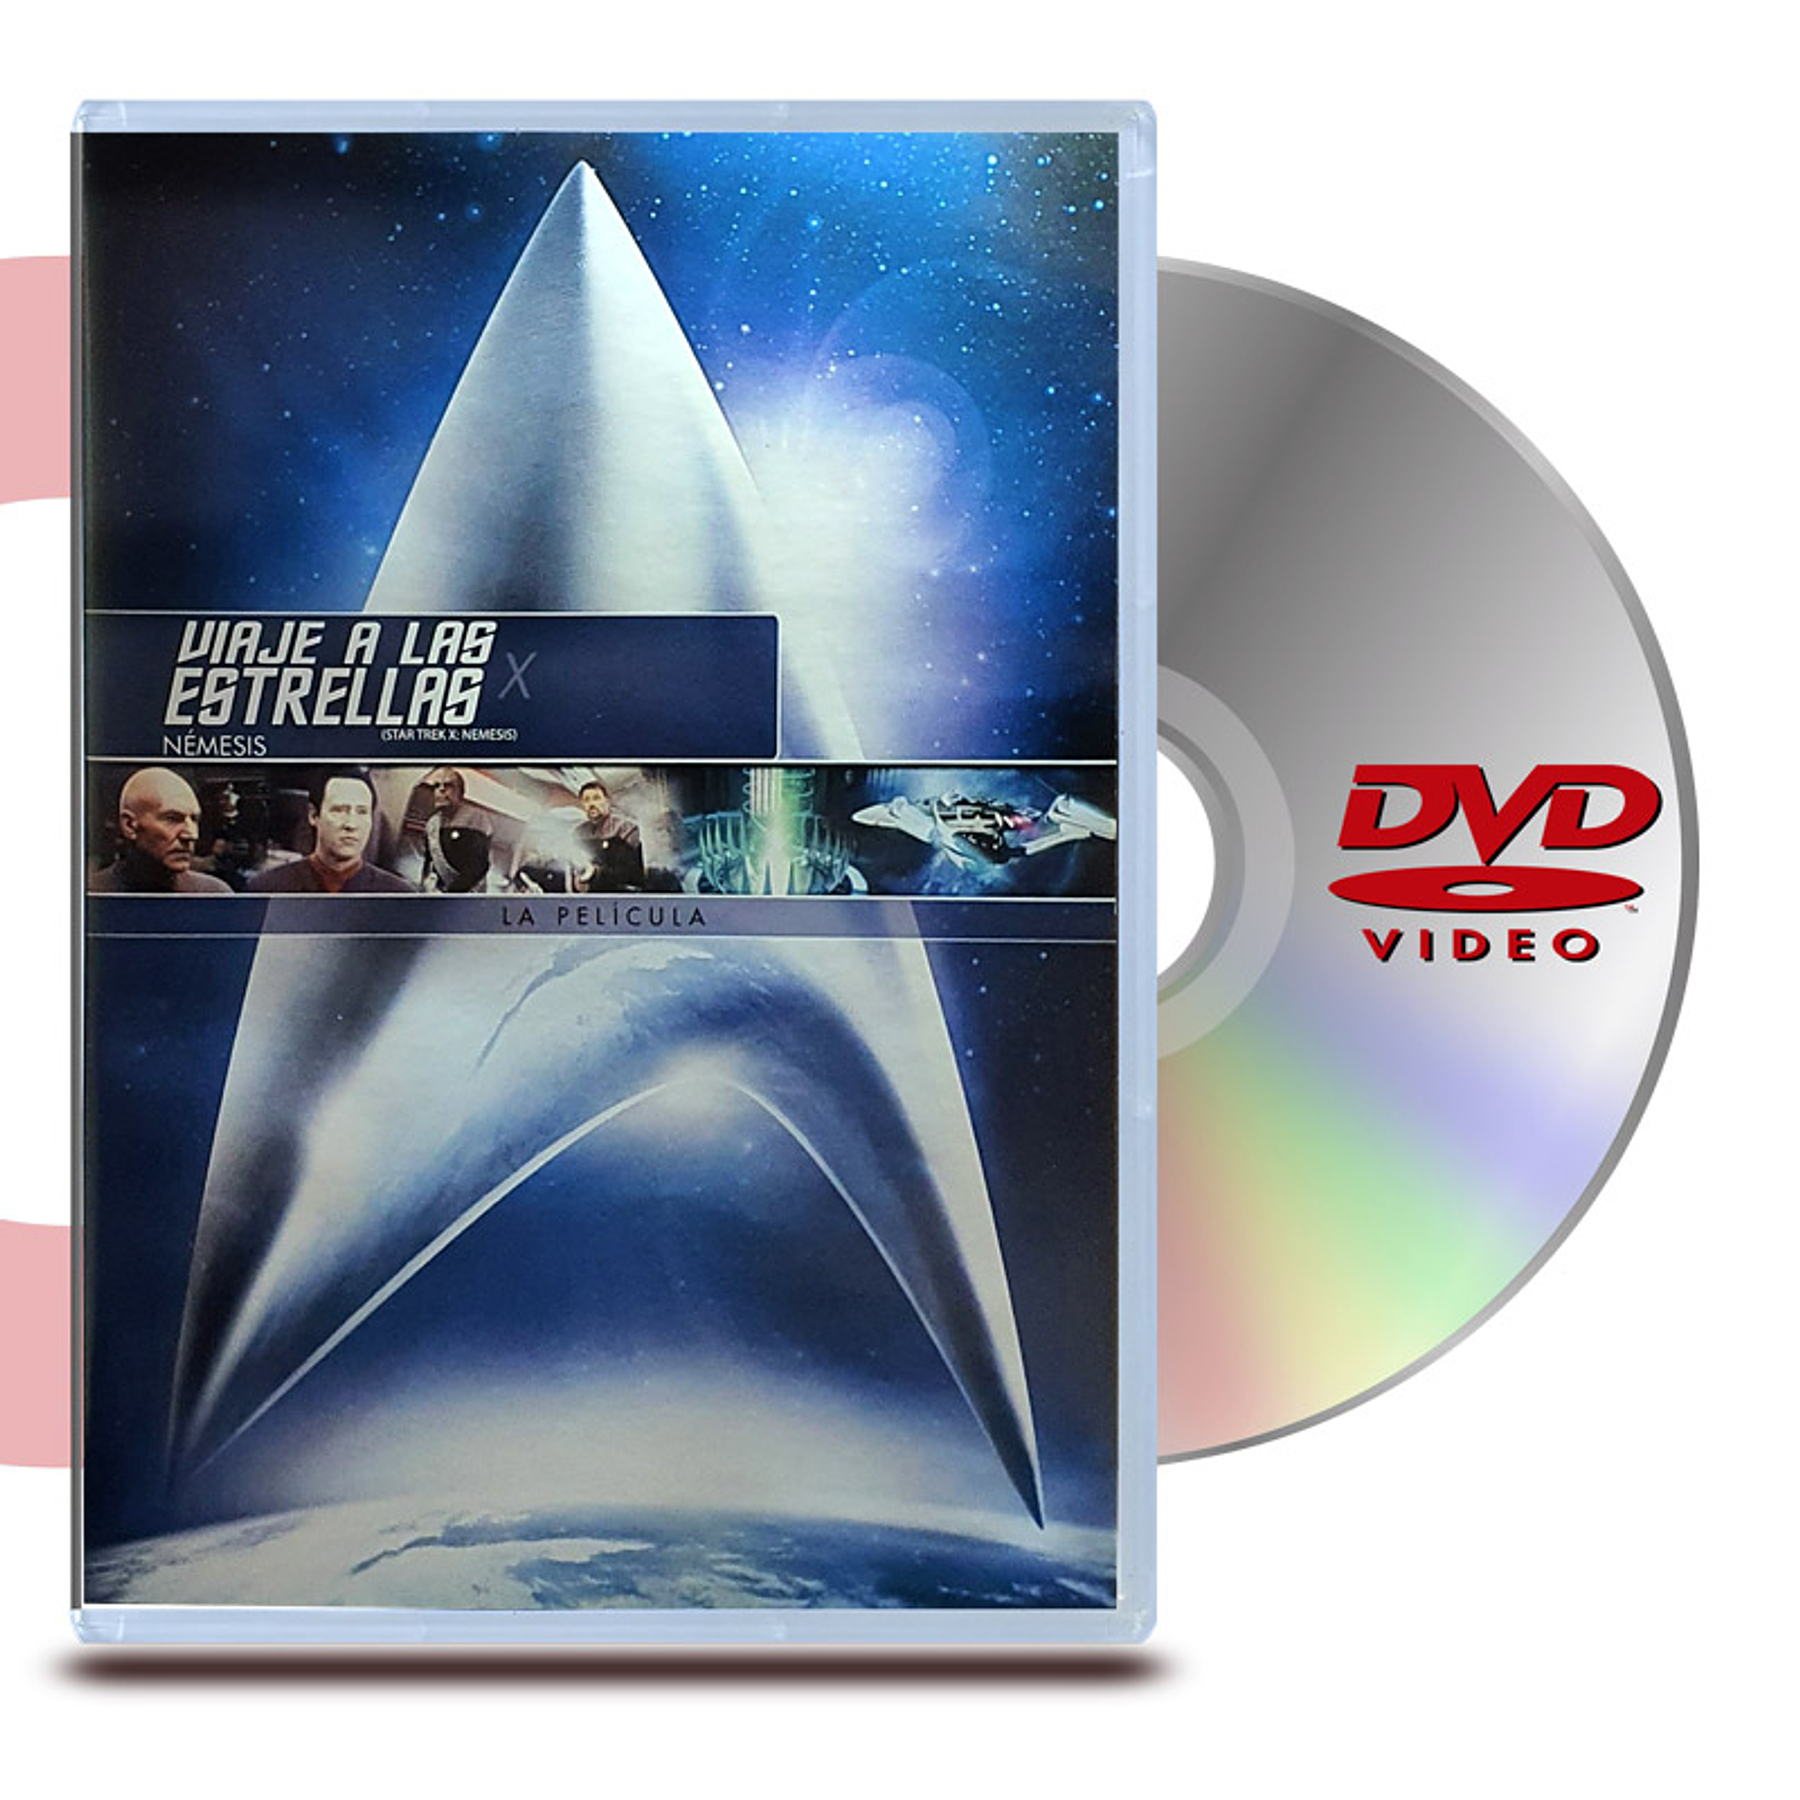 DVD STAR TREK 10 NÉMESIS - VIAJE A LAS ESTRELLAS 10